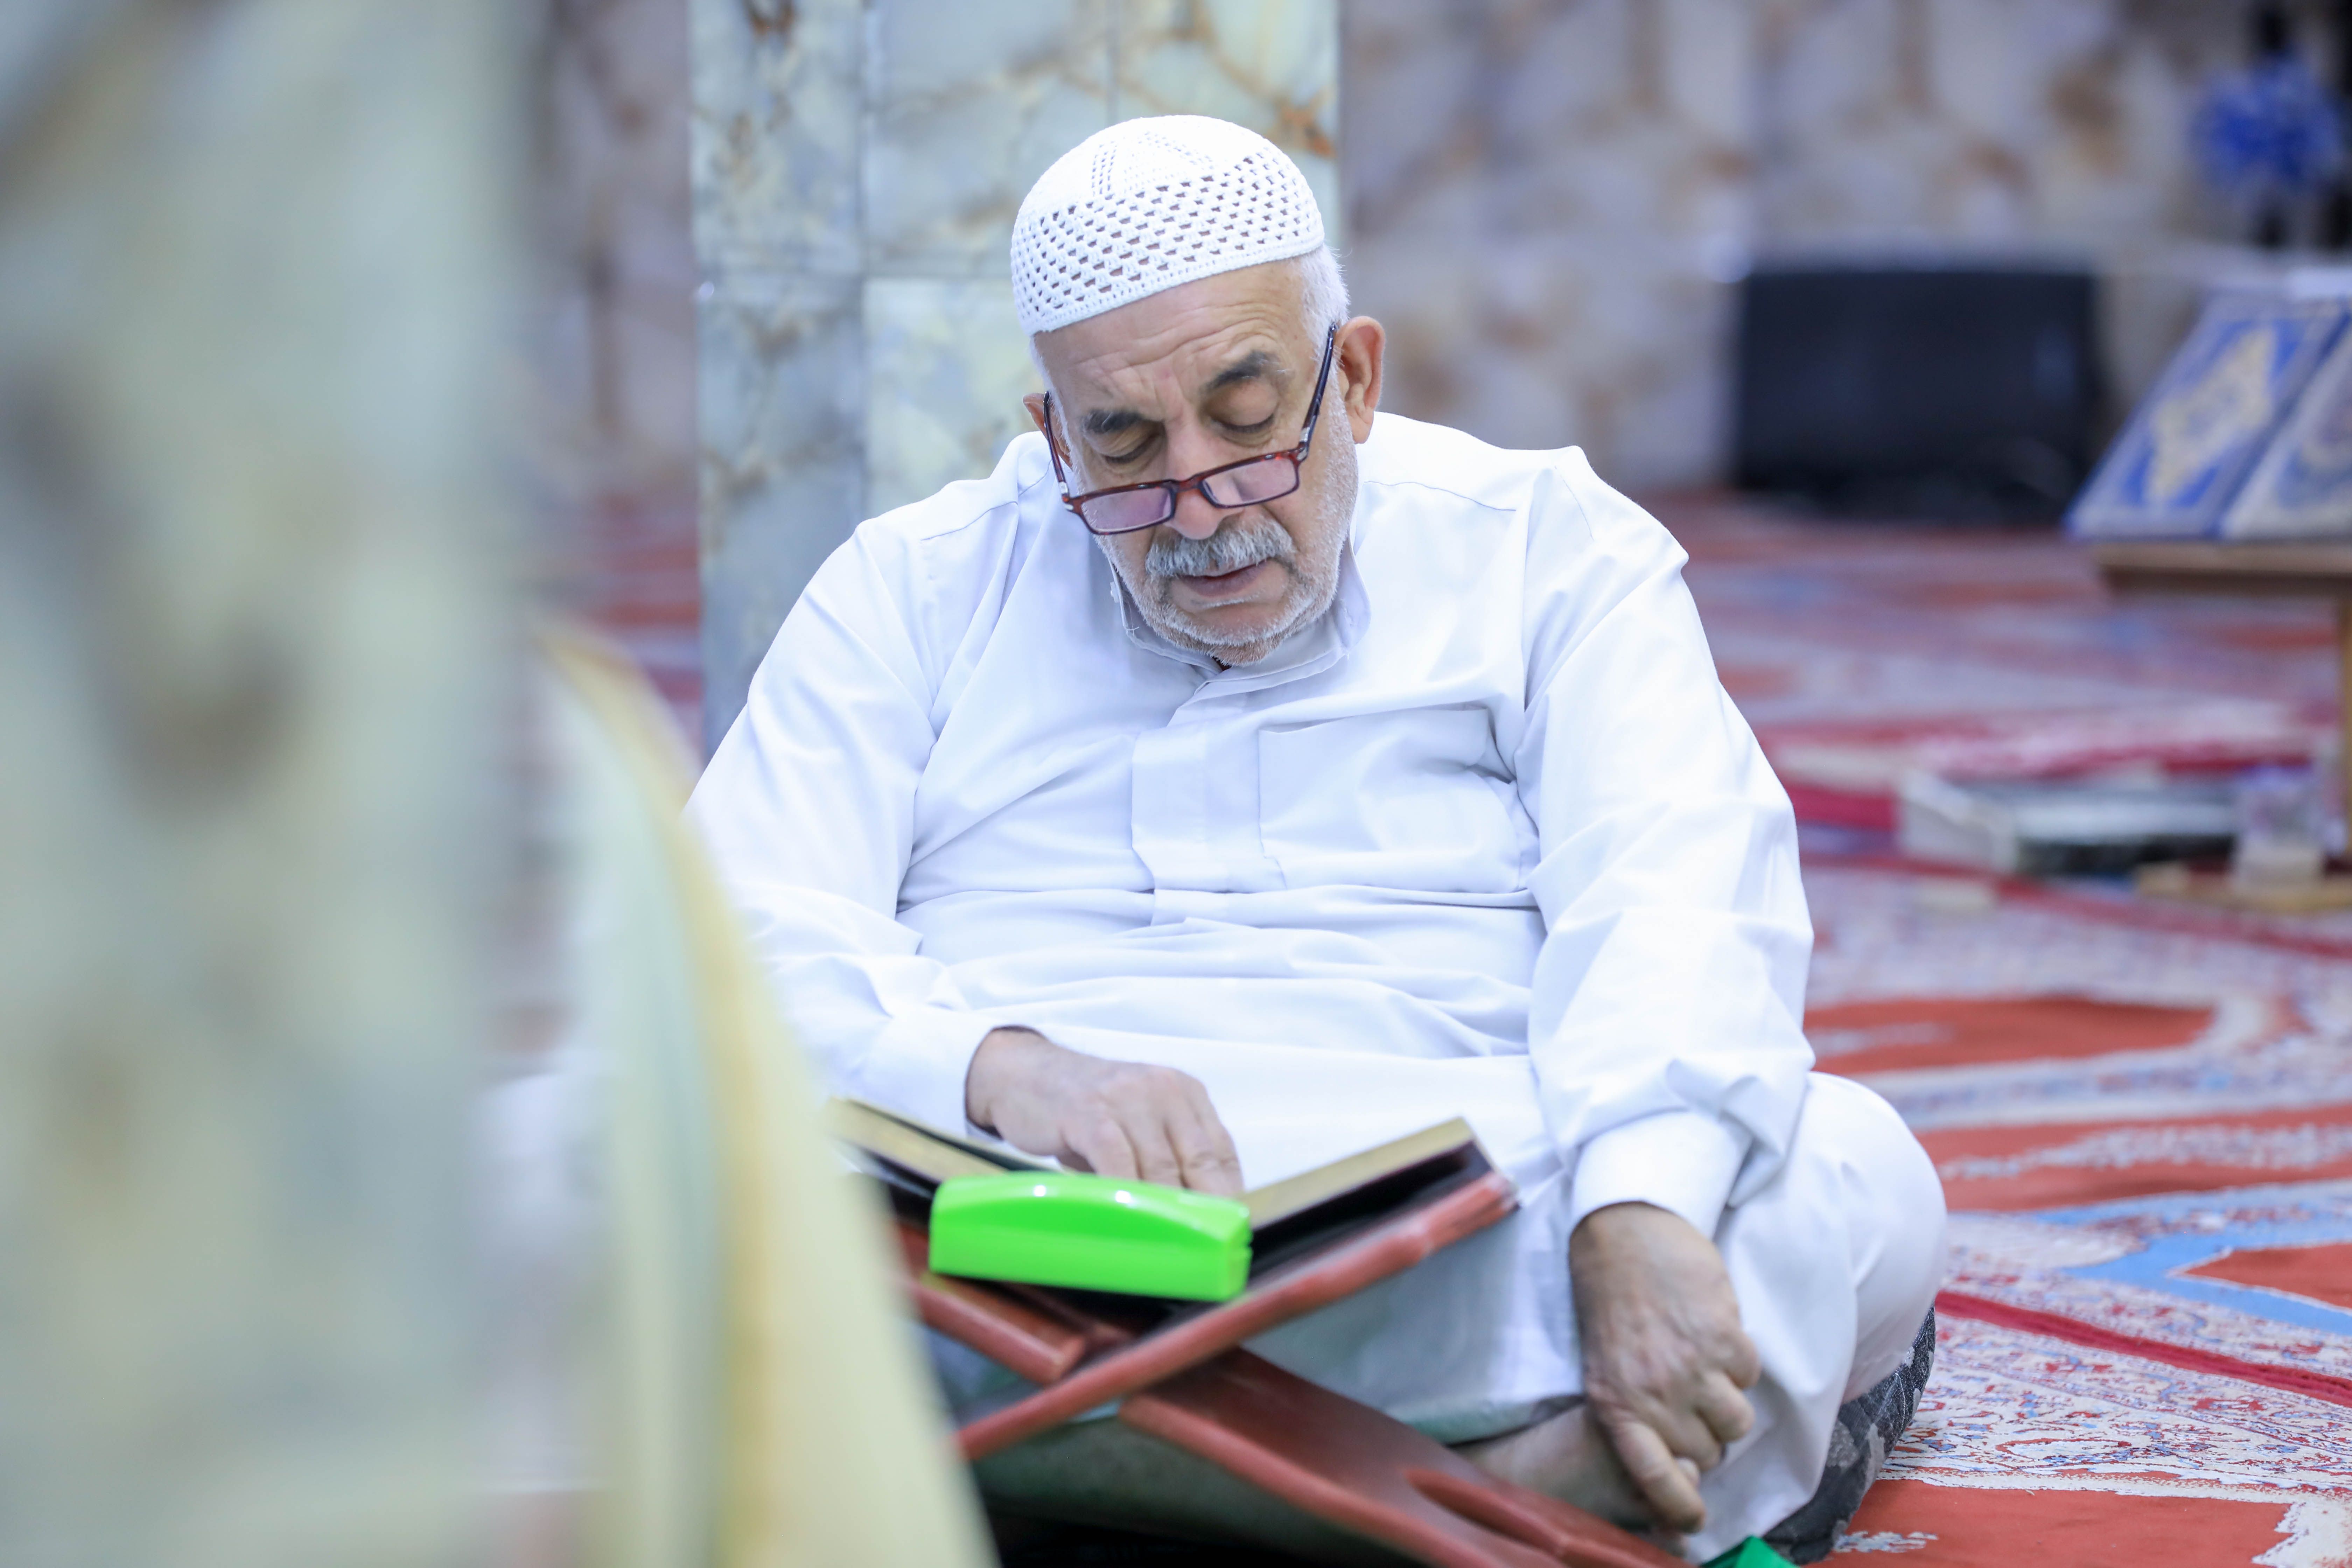 ضمن جولاته التفقّدية مدير معهد القرآن الكريم يحضر البرامج الرمضانية في بغداد